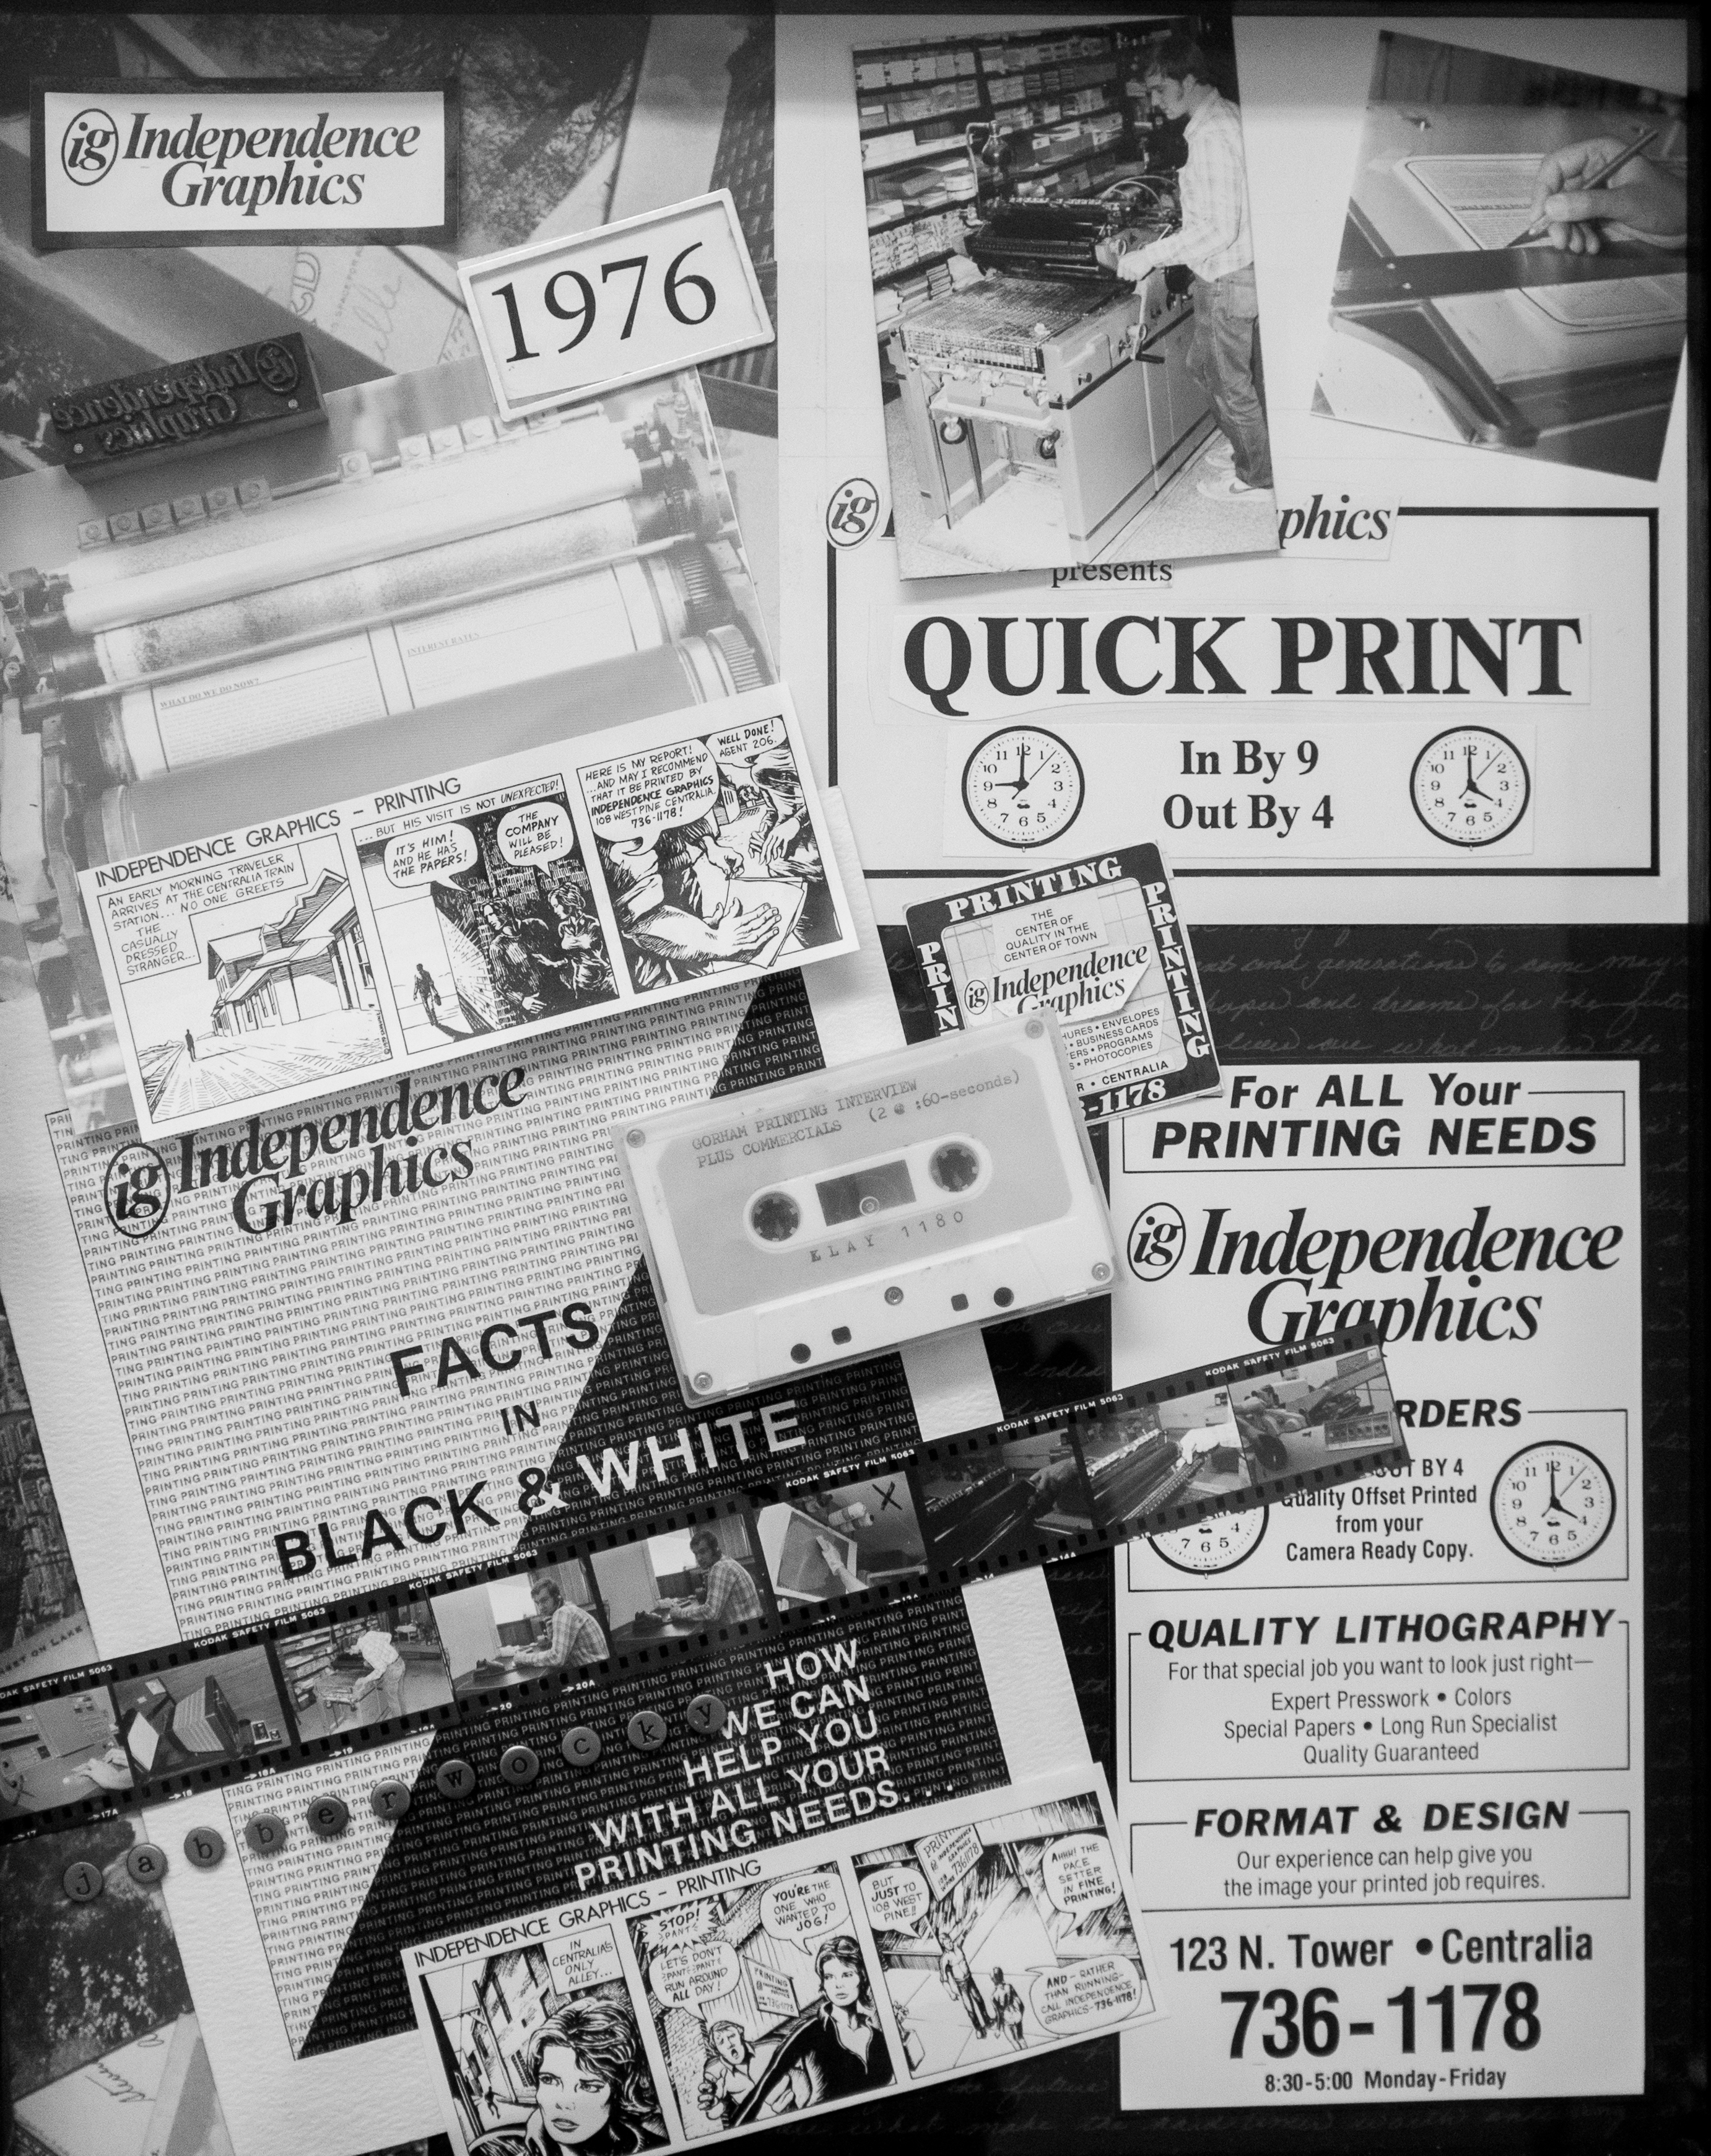 newspaper facts in black and white Kurt Gorham of Gorham Printing